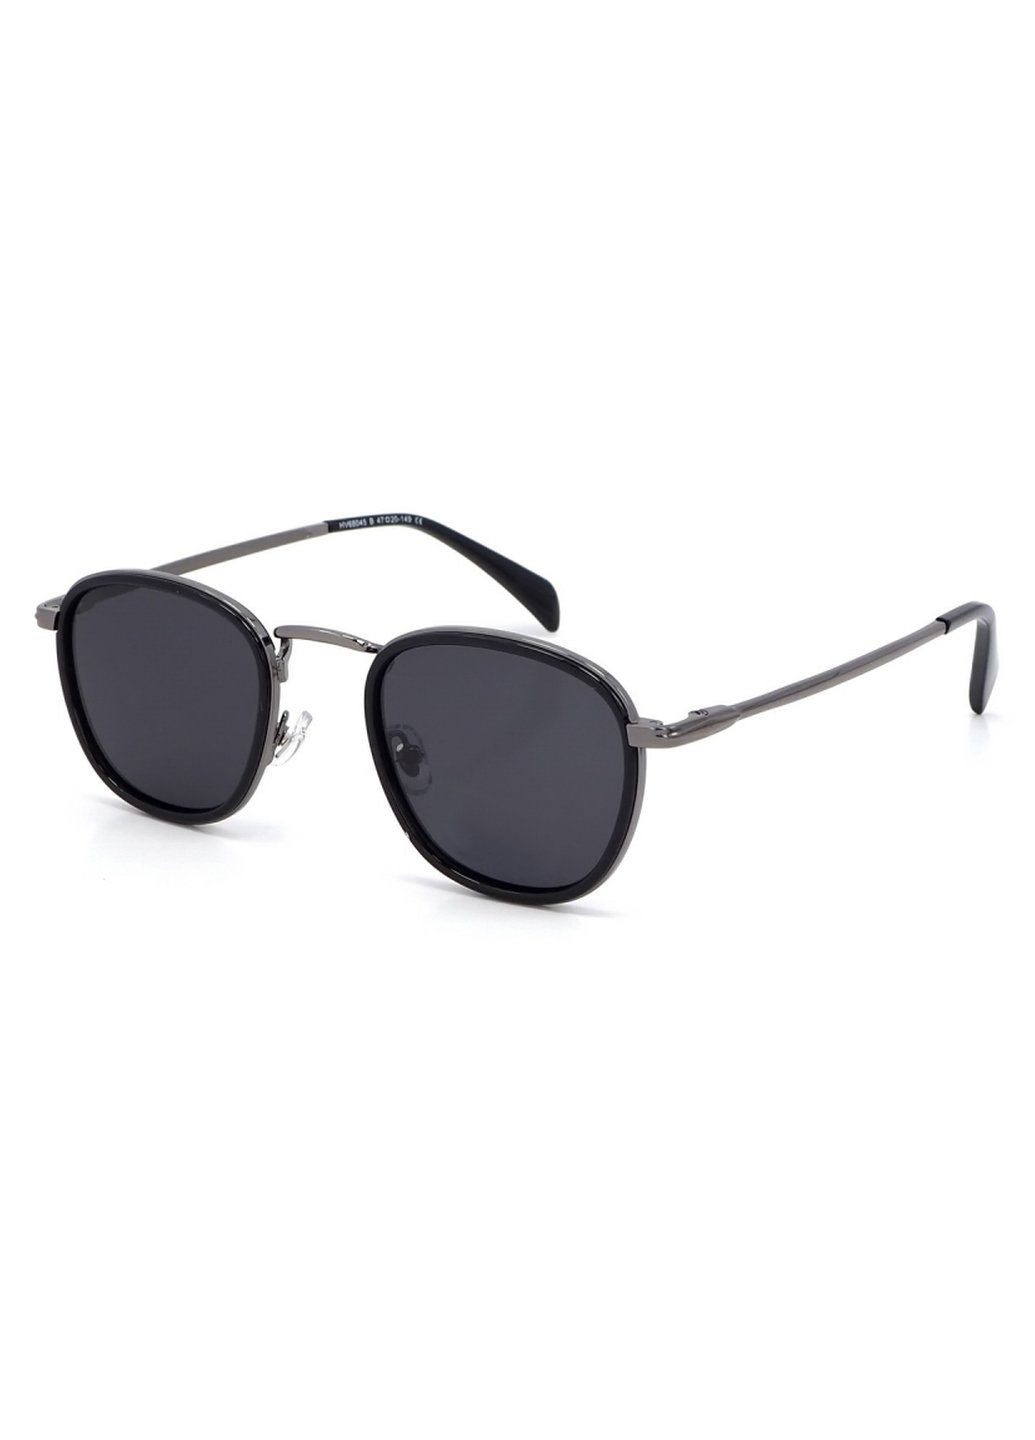 Купить Солнцезащитные очки c поляризацией HAVVS HV68045 170013 - Черный в интернет-магазине